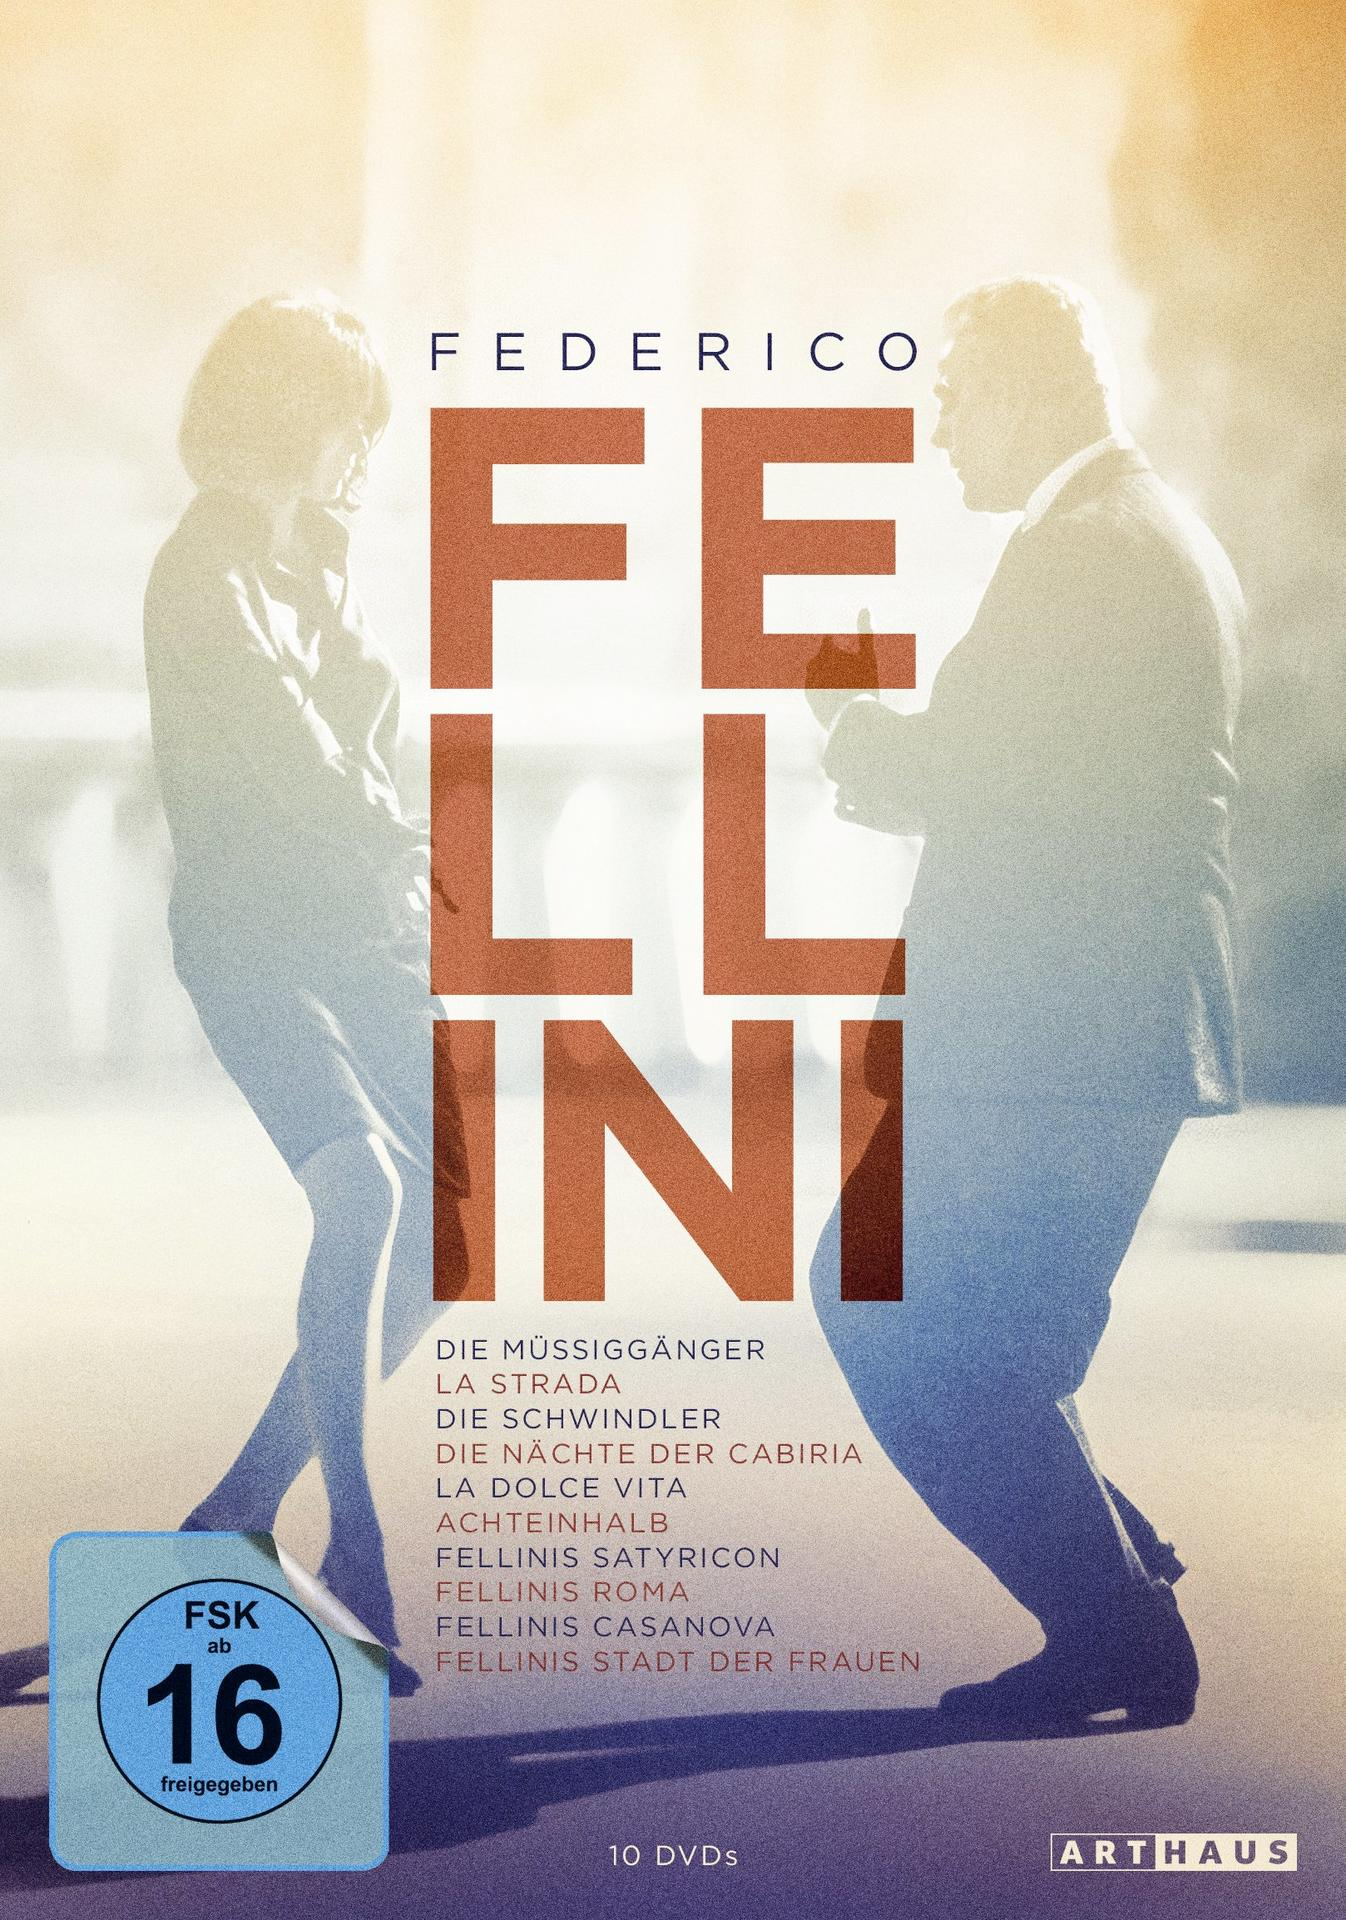 Edition Federico Fellini DVD